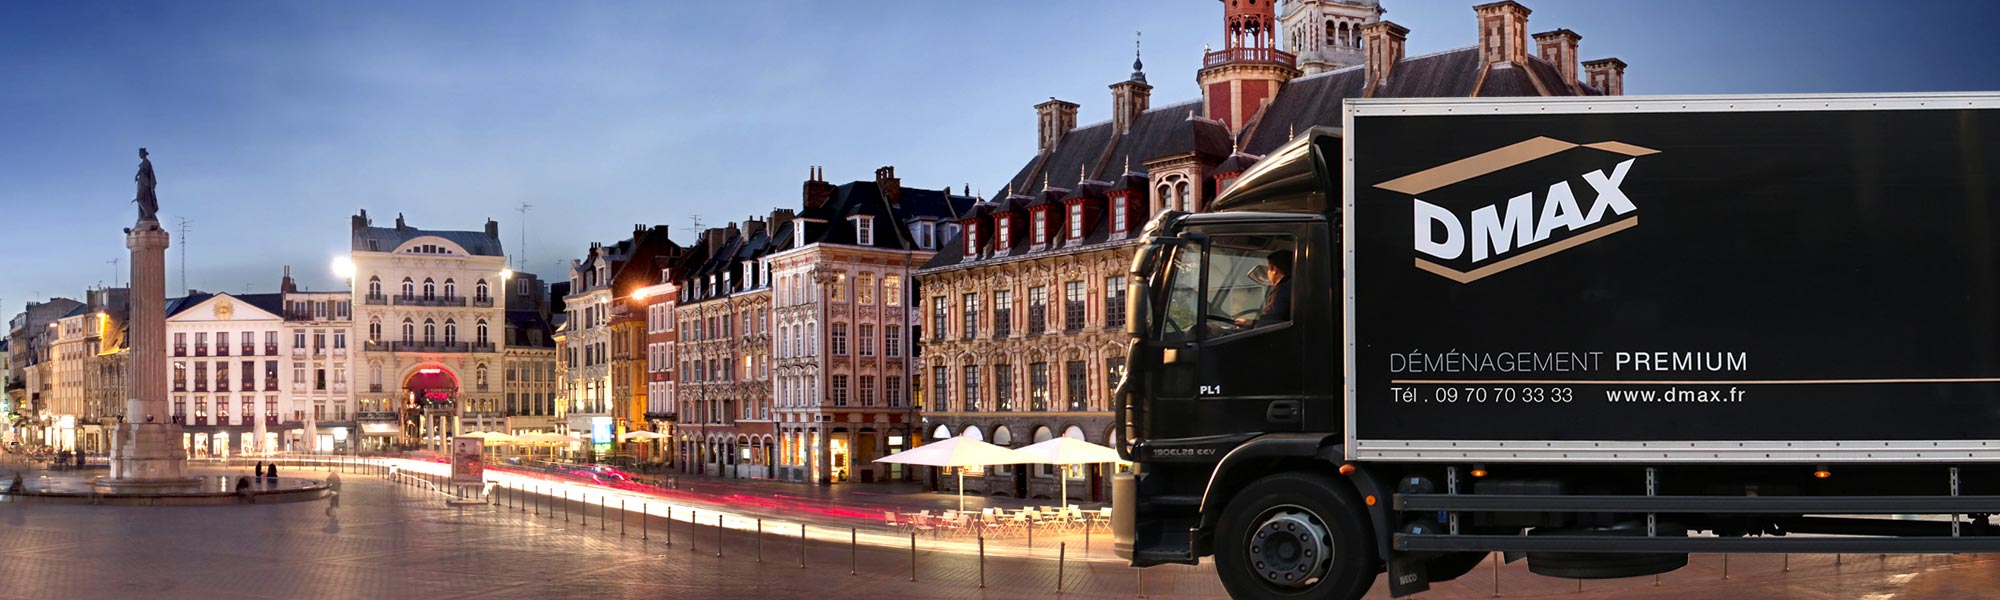 Choisir de déménager son entreprise de Paris à Lille Dmax, entreprise de déménagement d'entreprise et particulier